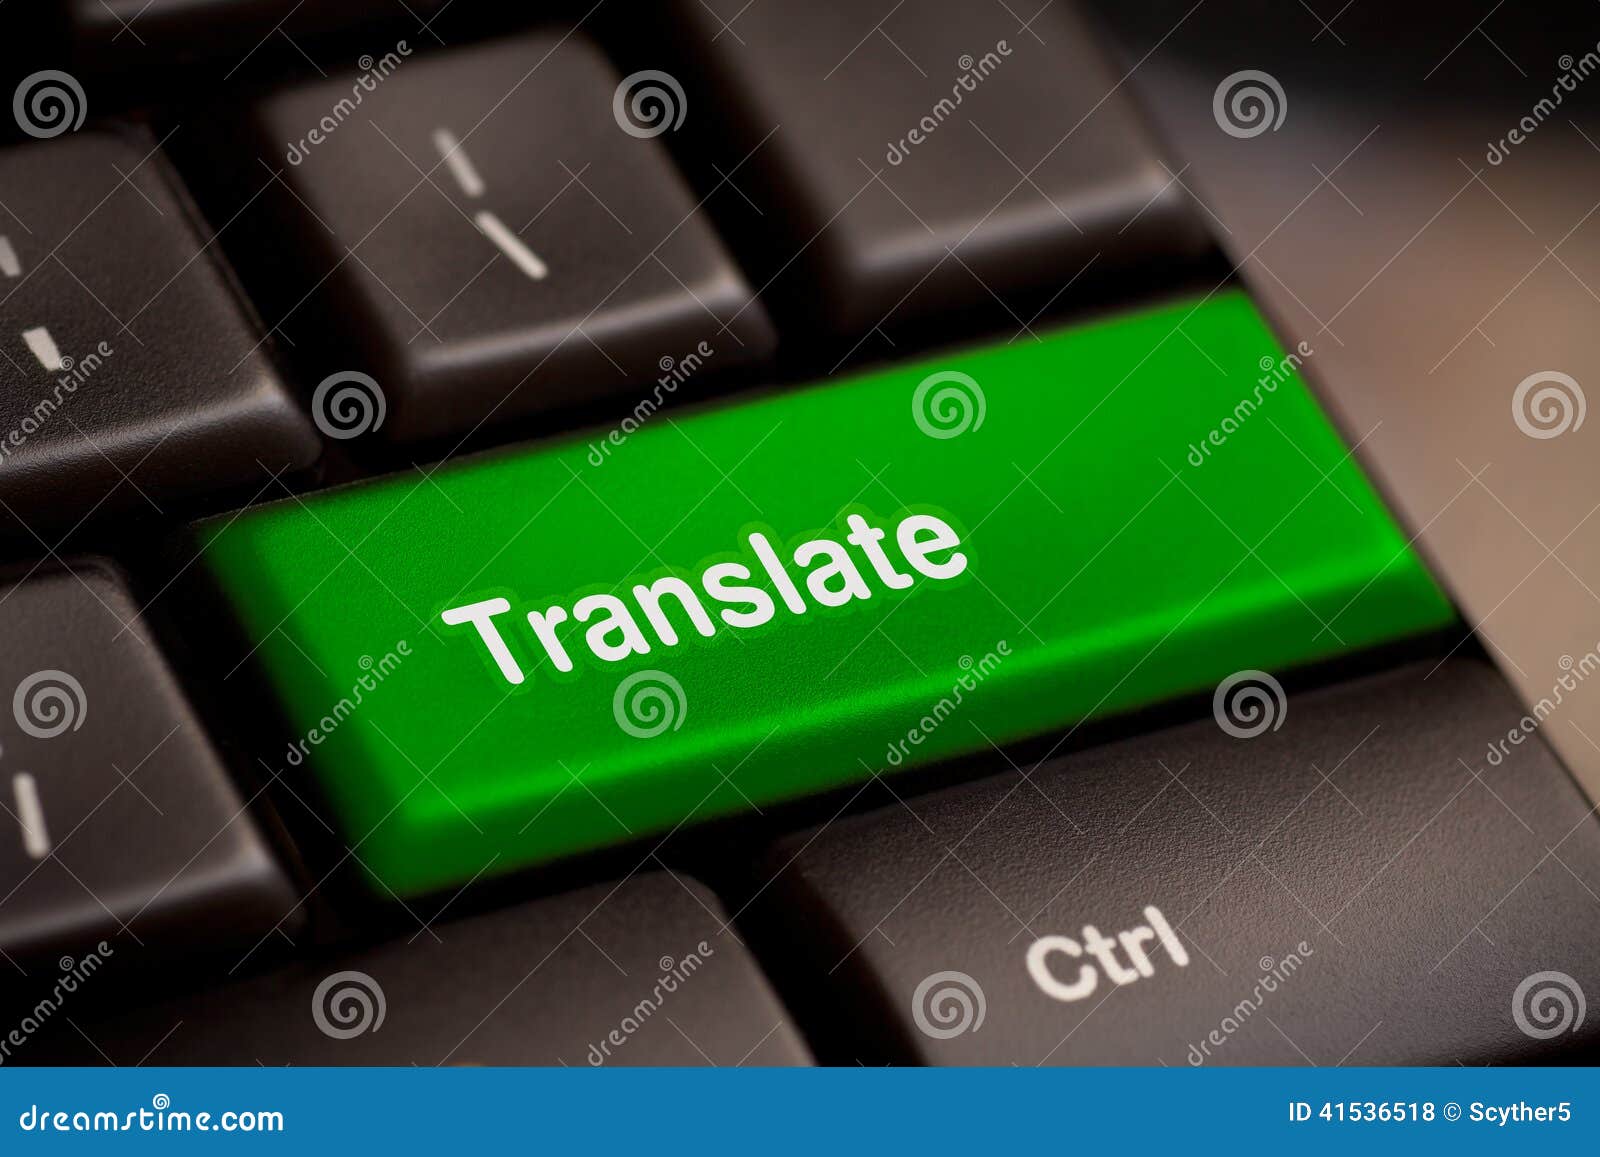 translate computer key